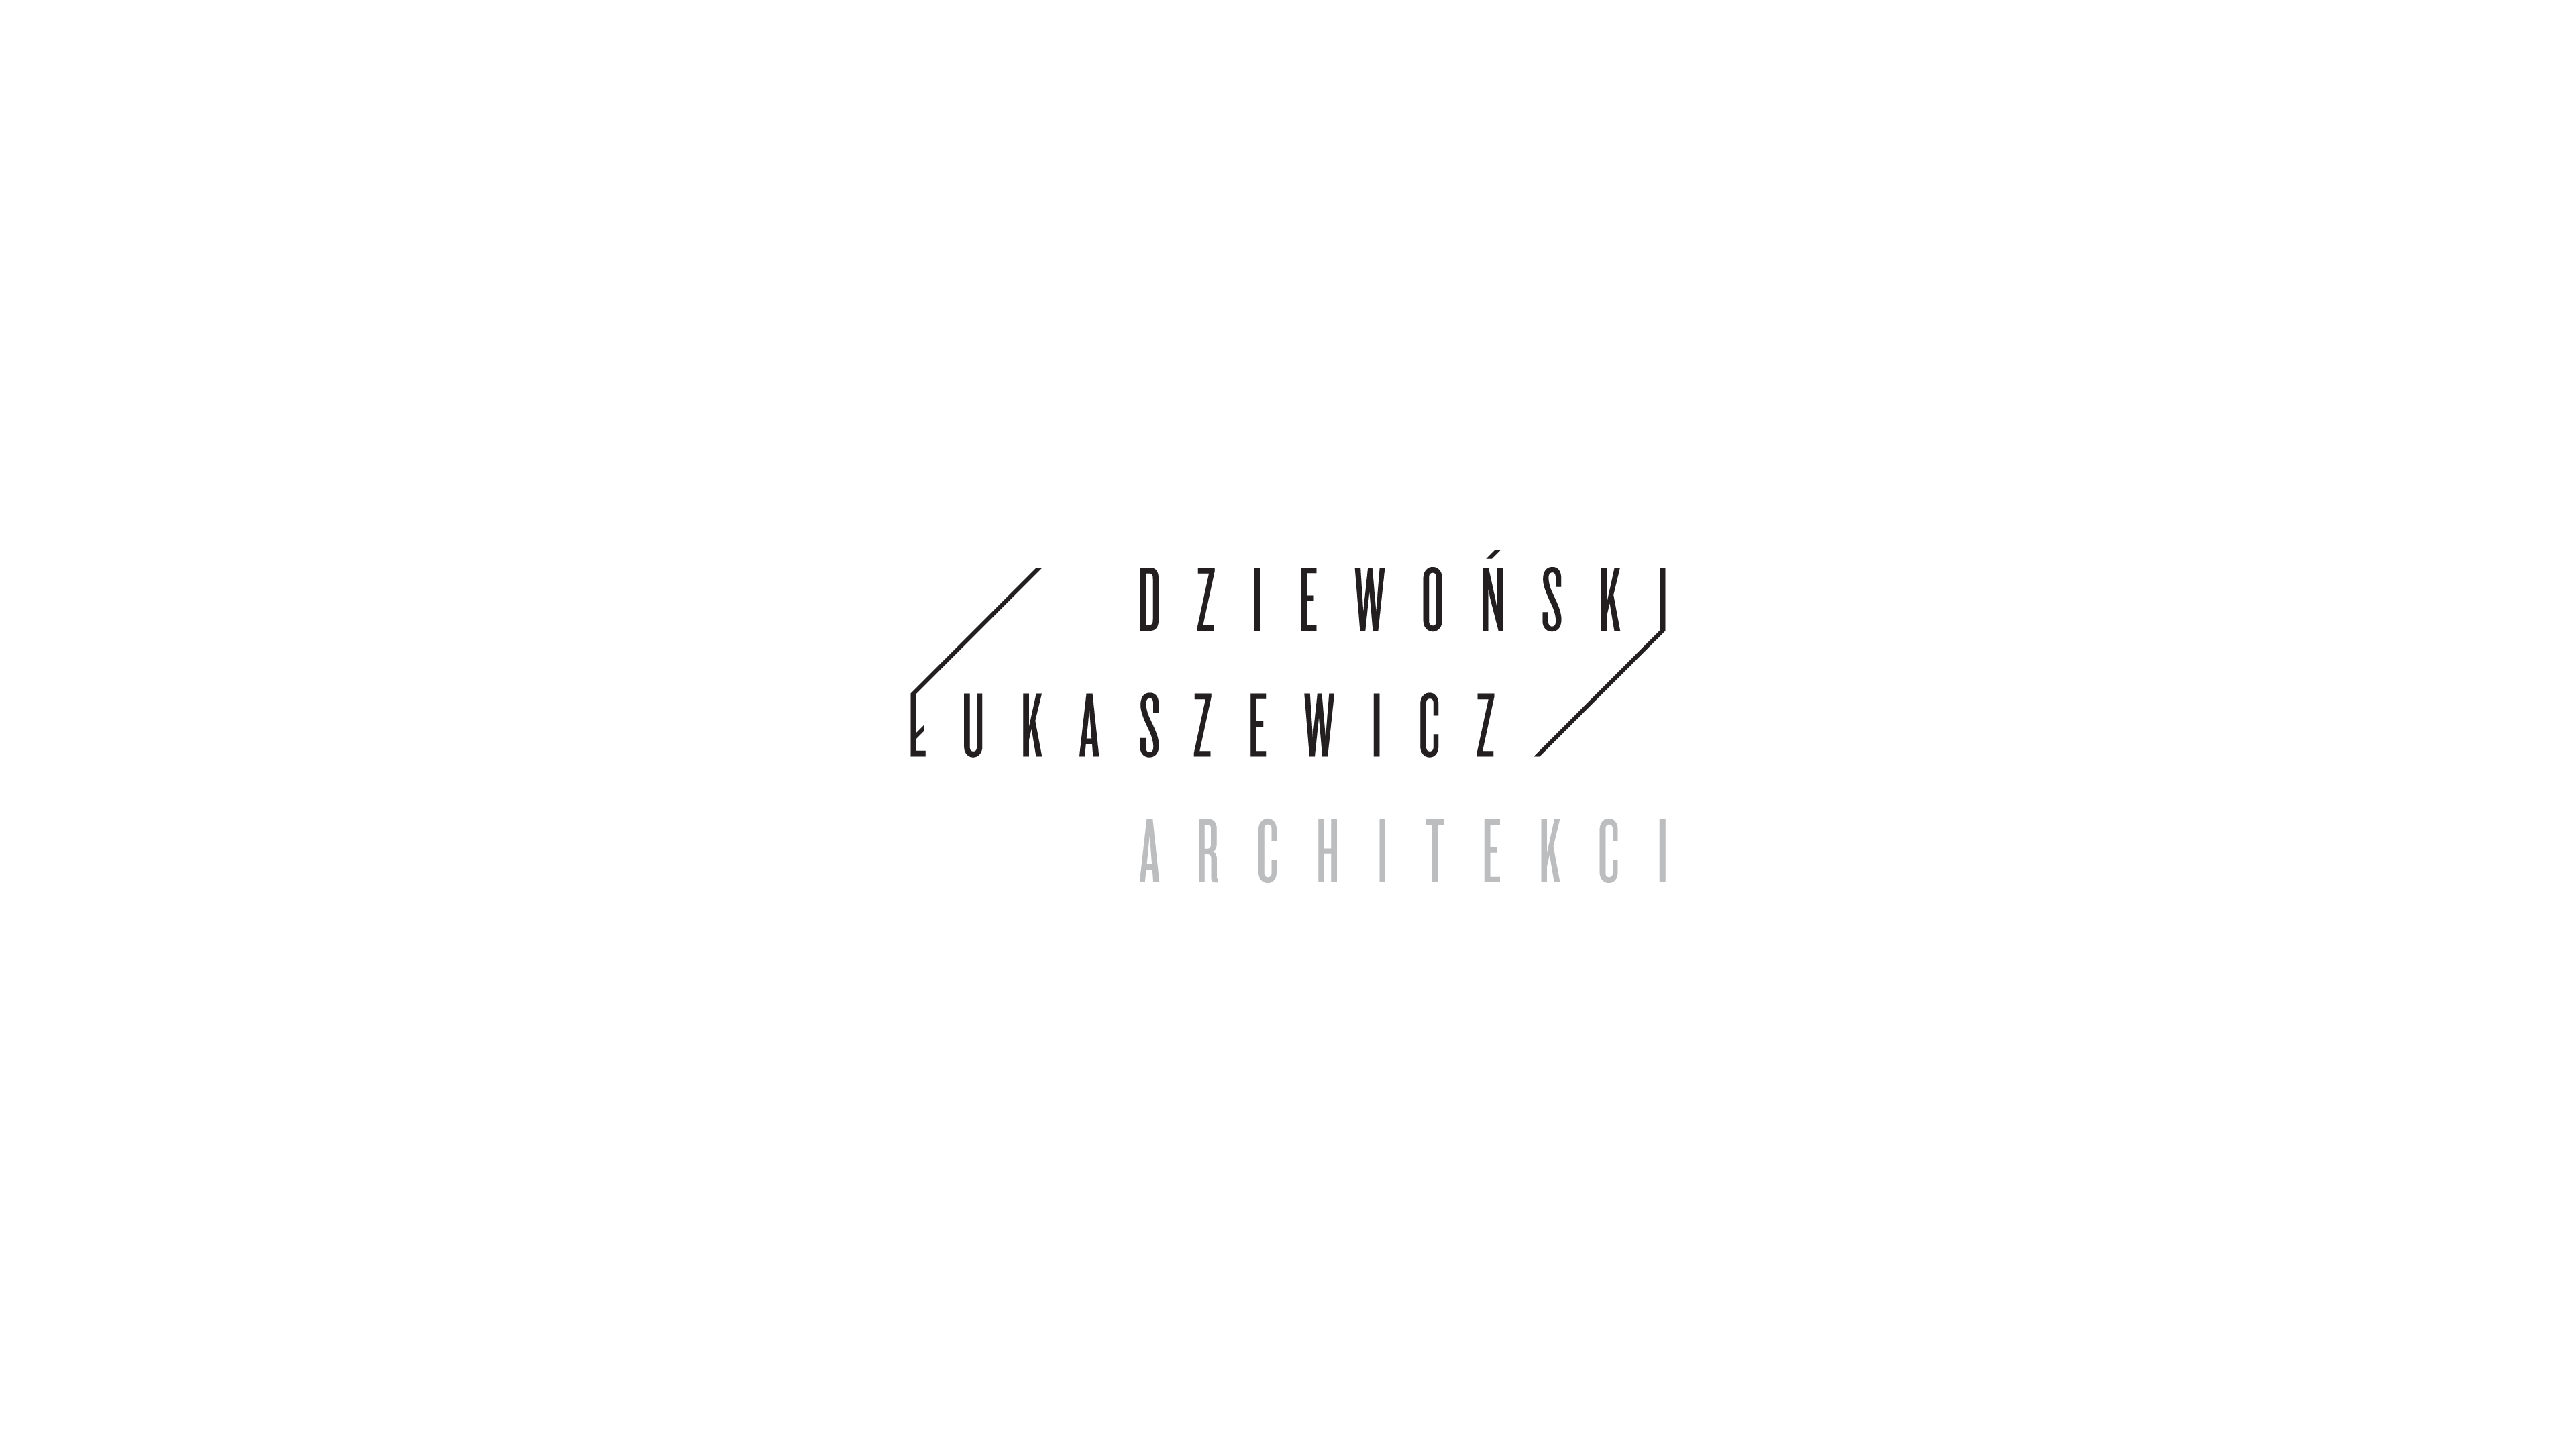 DL Architekci - The Codeine Design